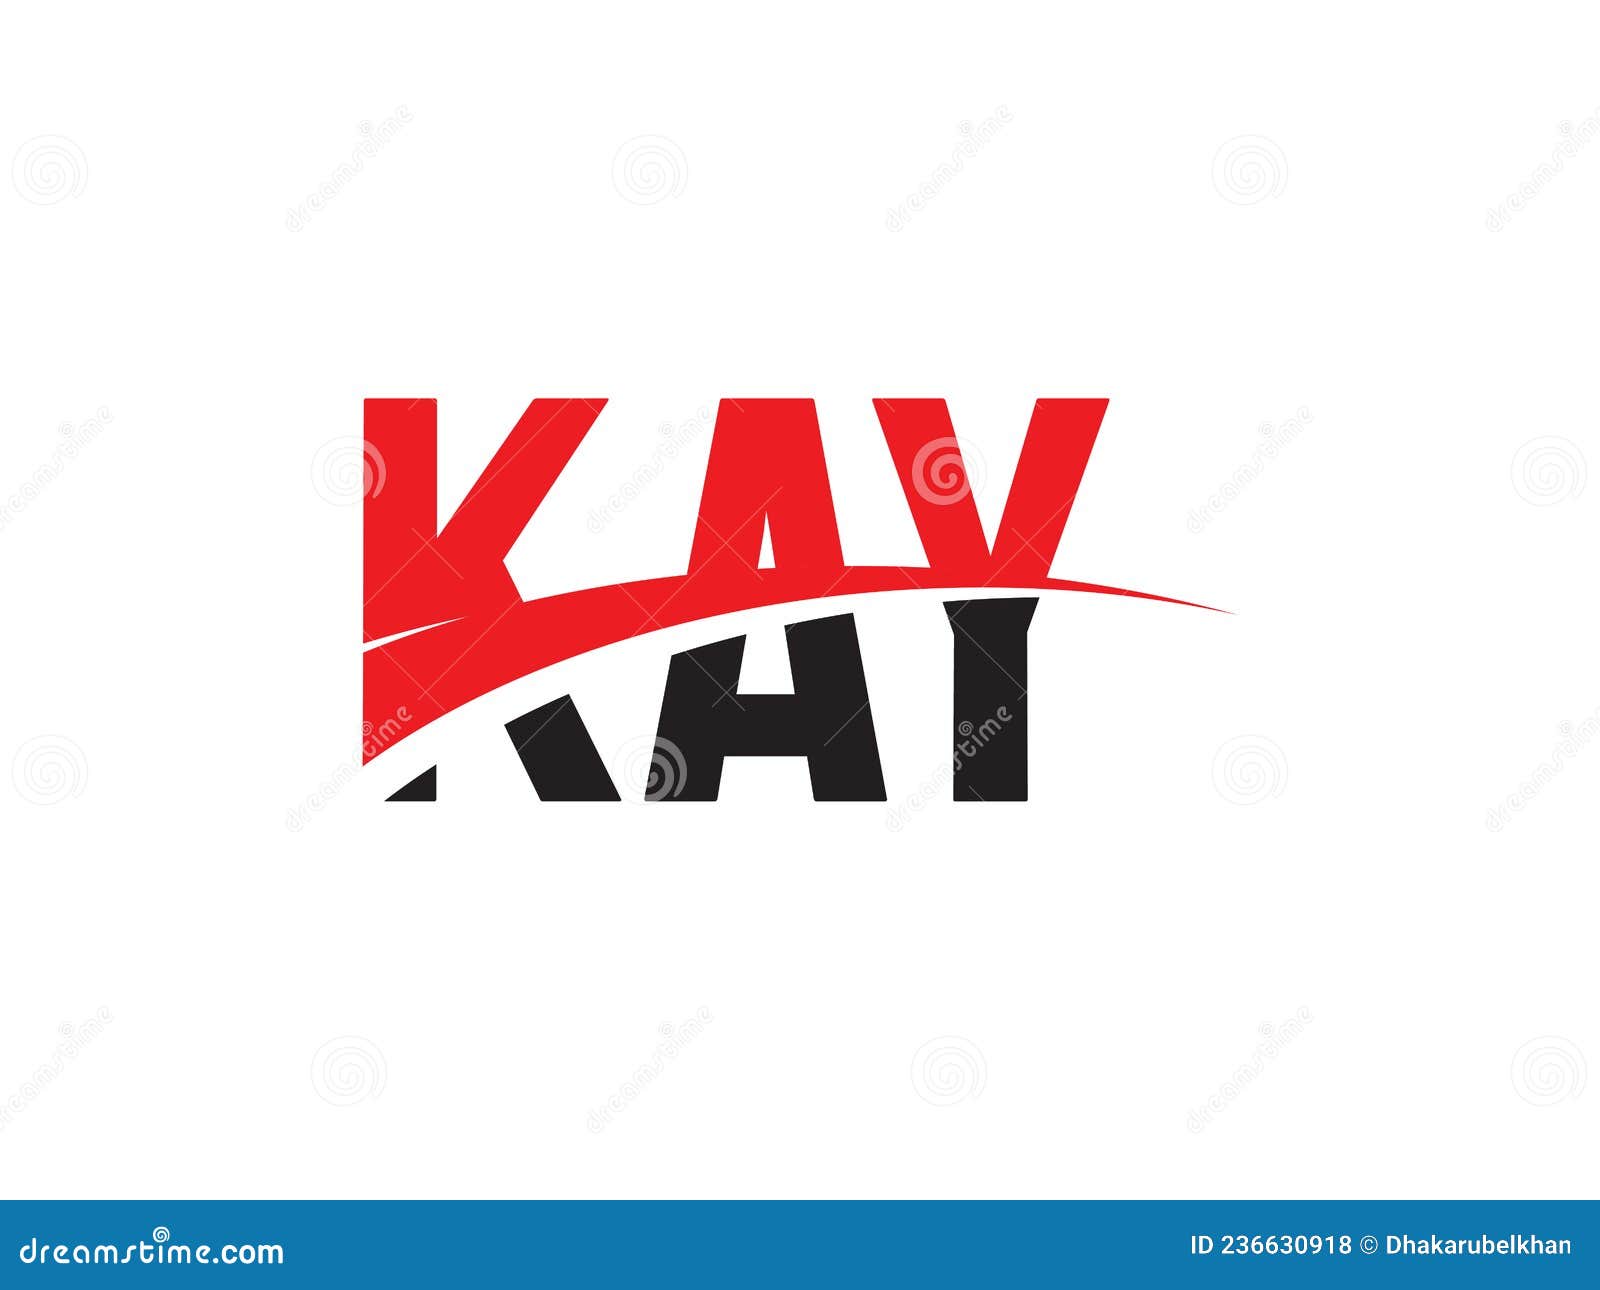 kay letter initial logo   